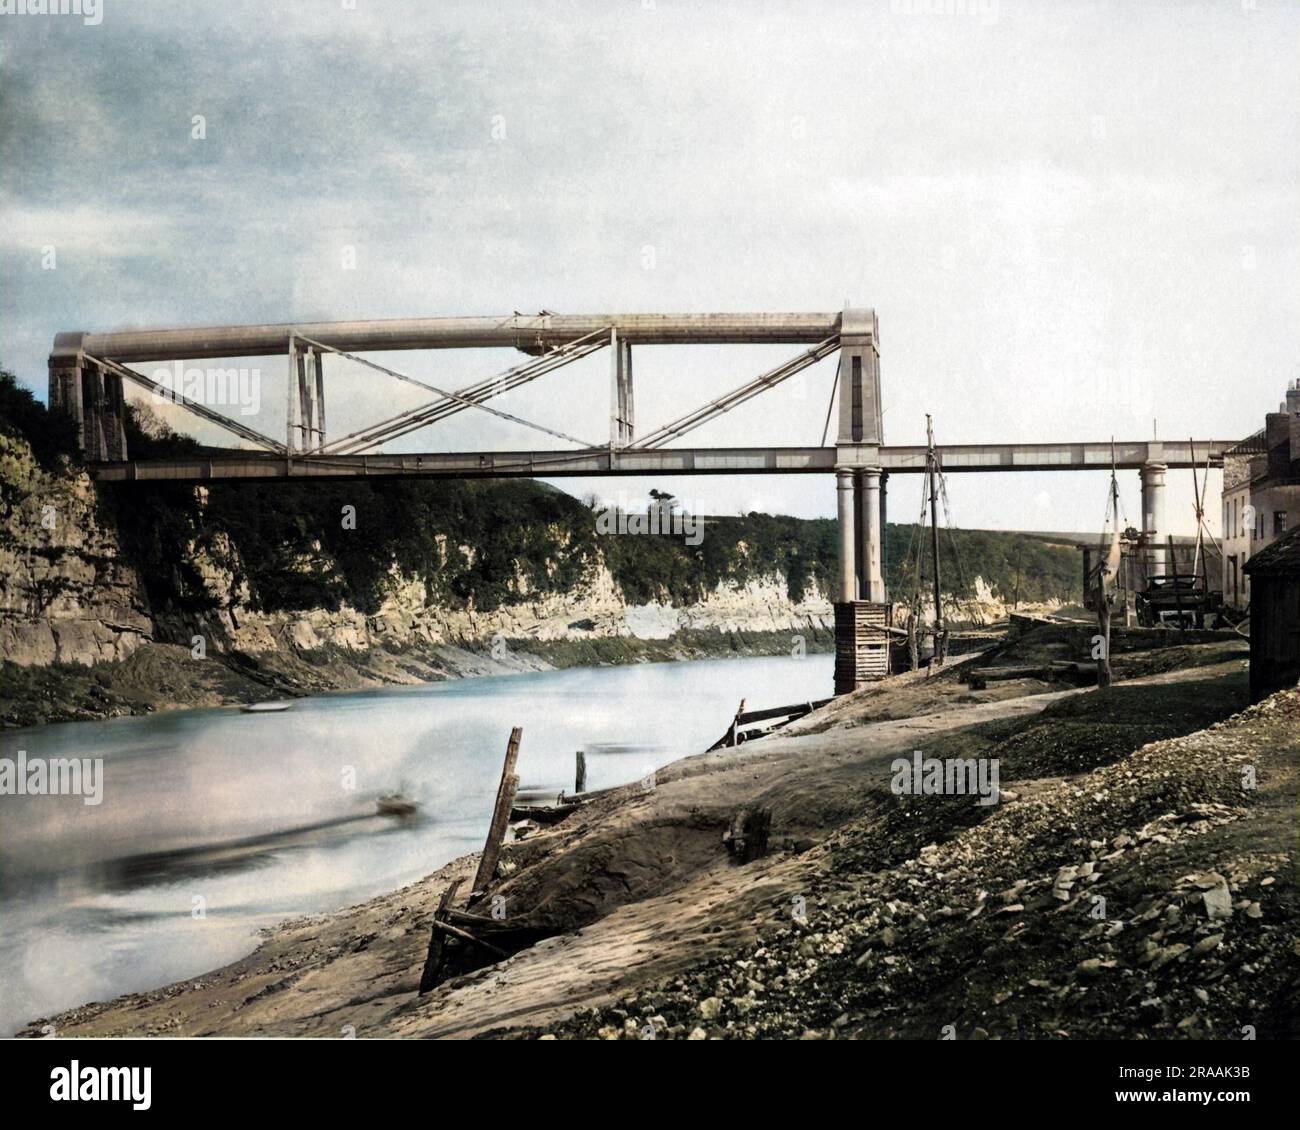 Brunel's Iron Railway Bridge über den Fluss Wye in Chepstow, Großbritannien. Datum: Ende des 19. Jahrhunderts Stockfoto